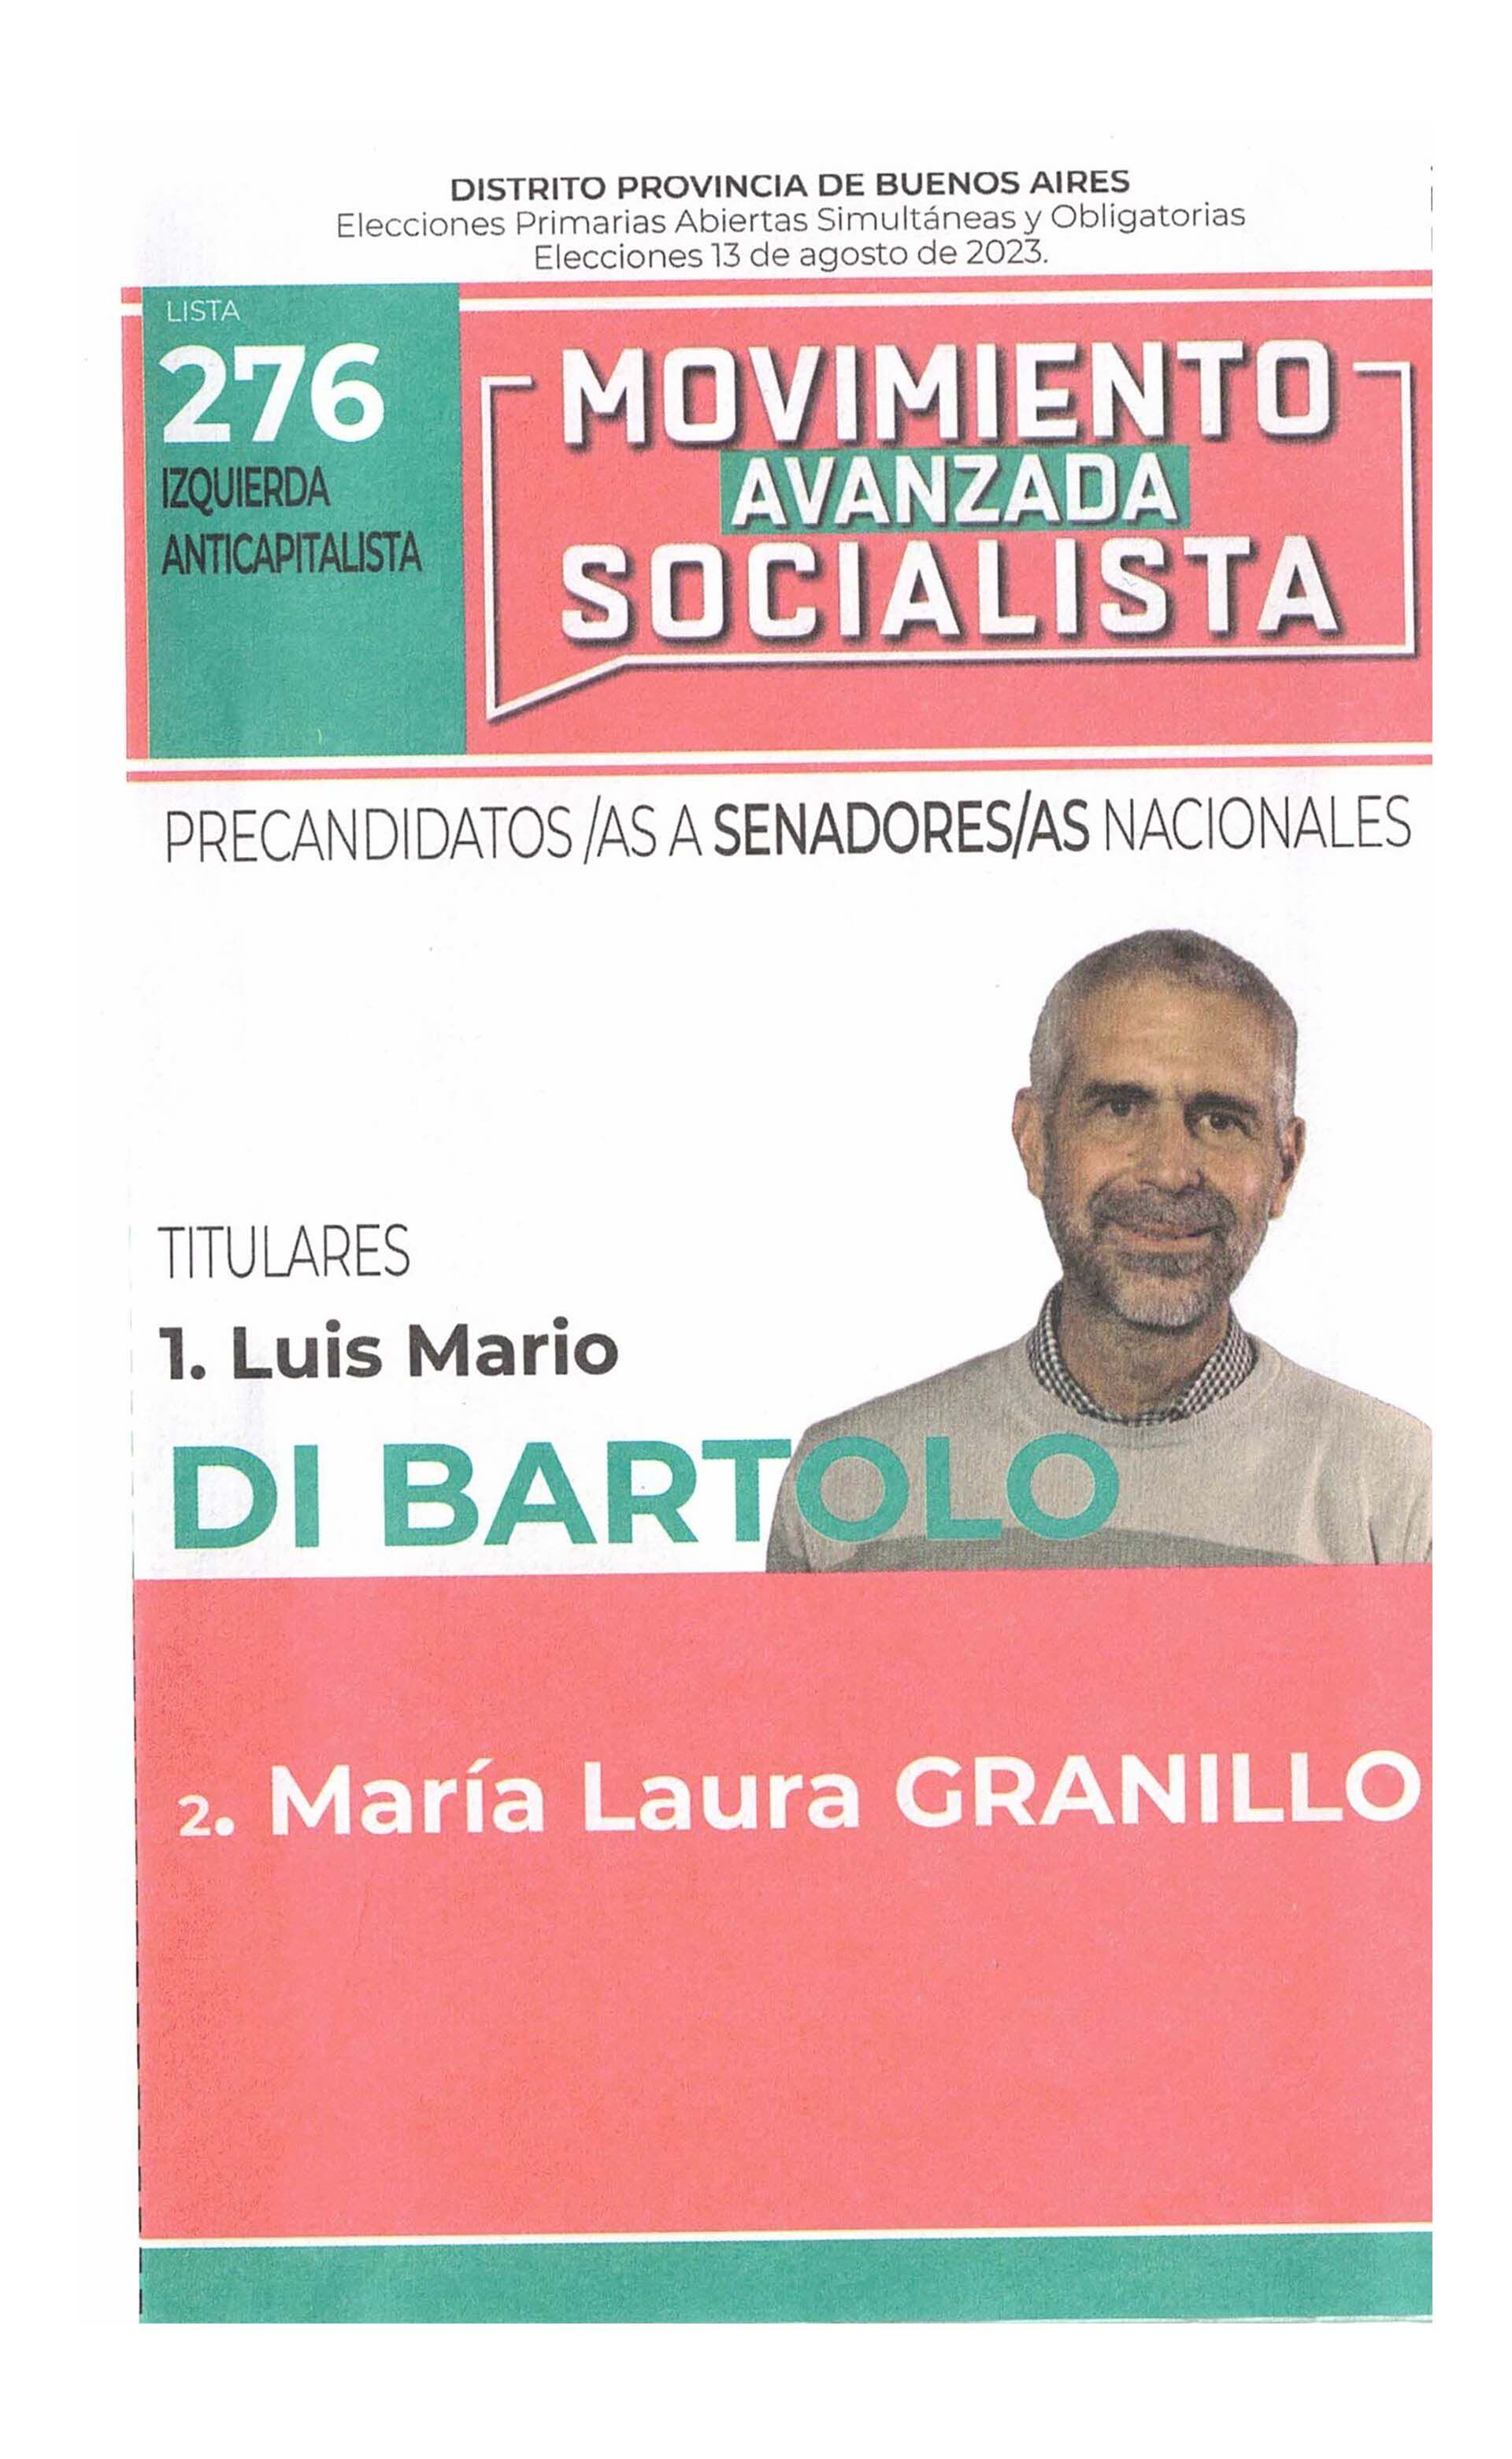 La boleta oficial del Nuevo Mas de precandidatos a senadores nacionales de Buenos Aires